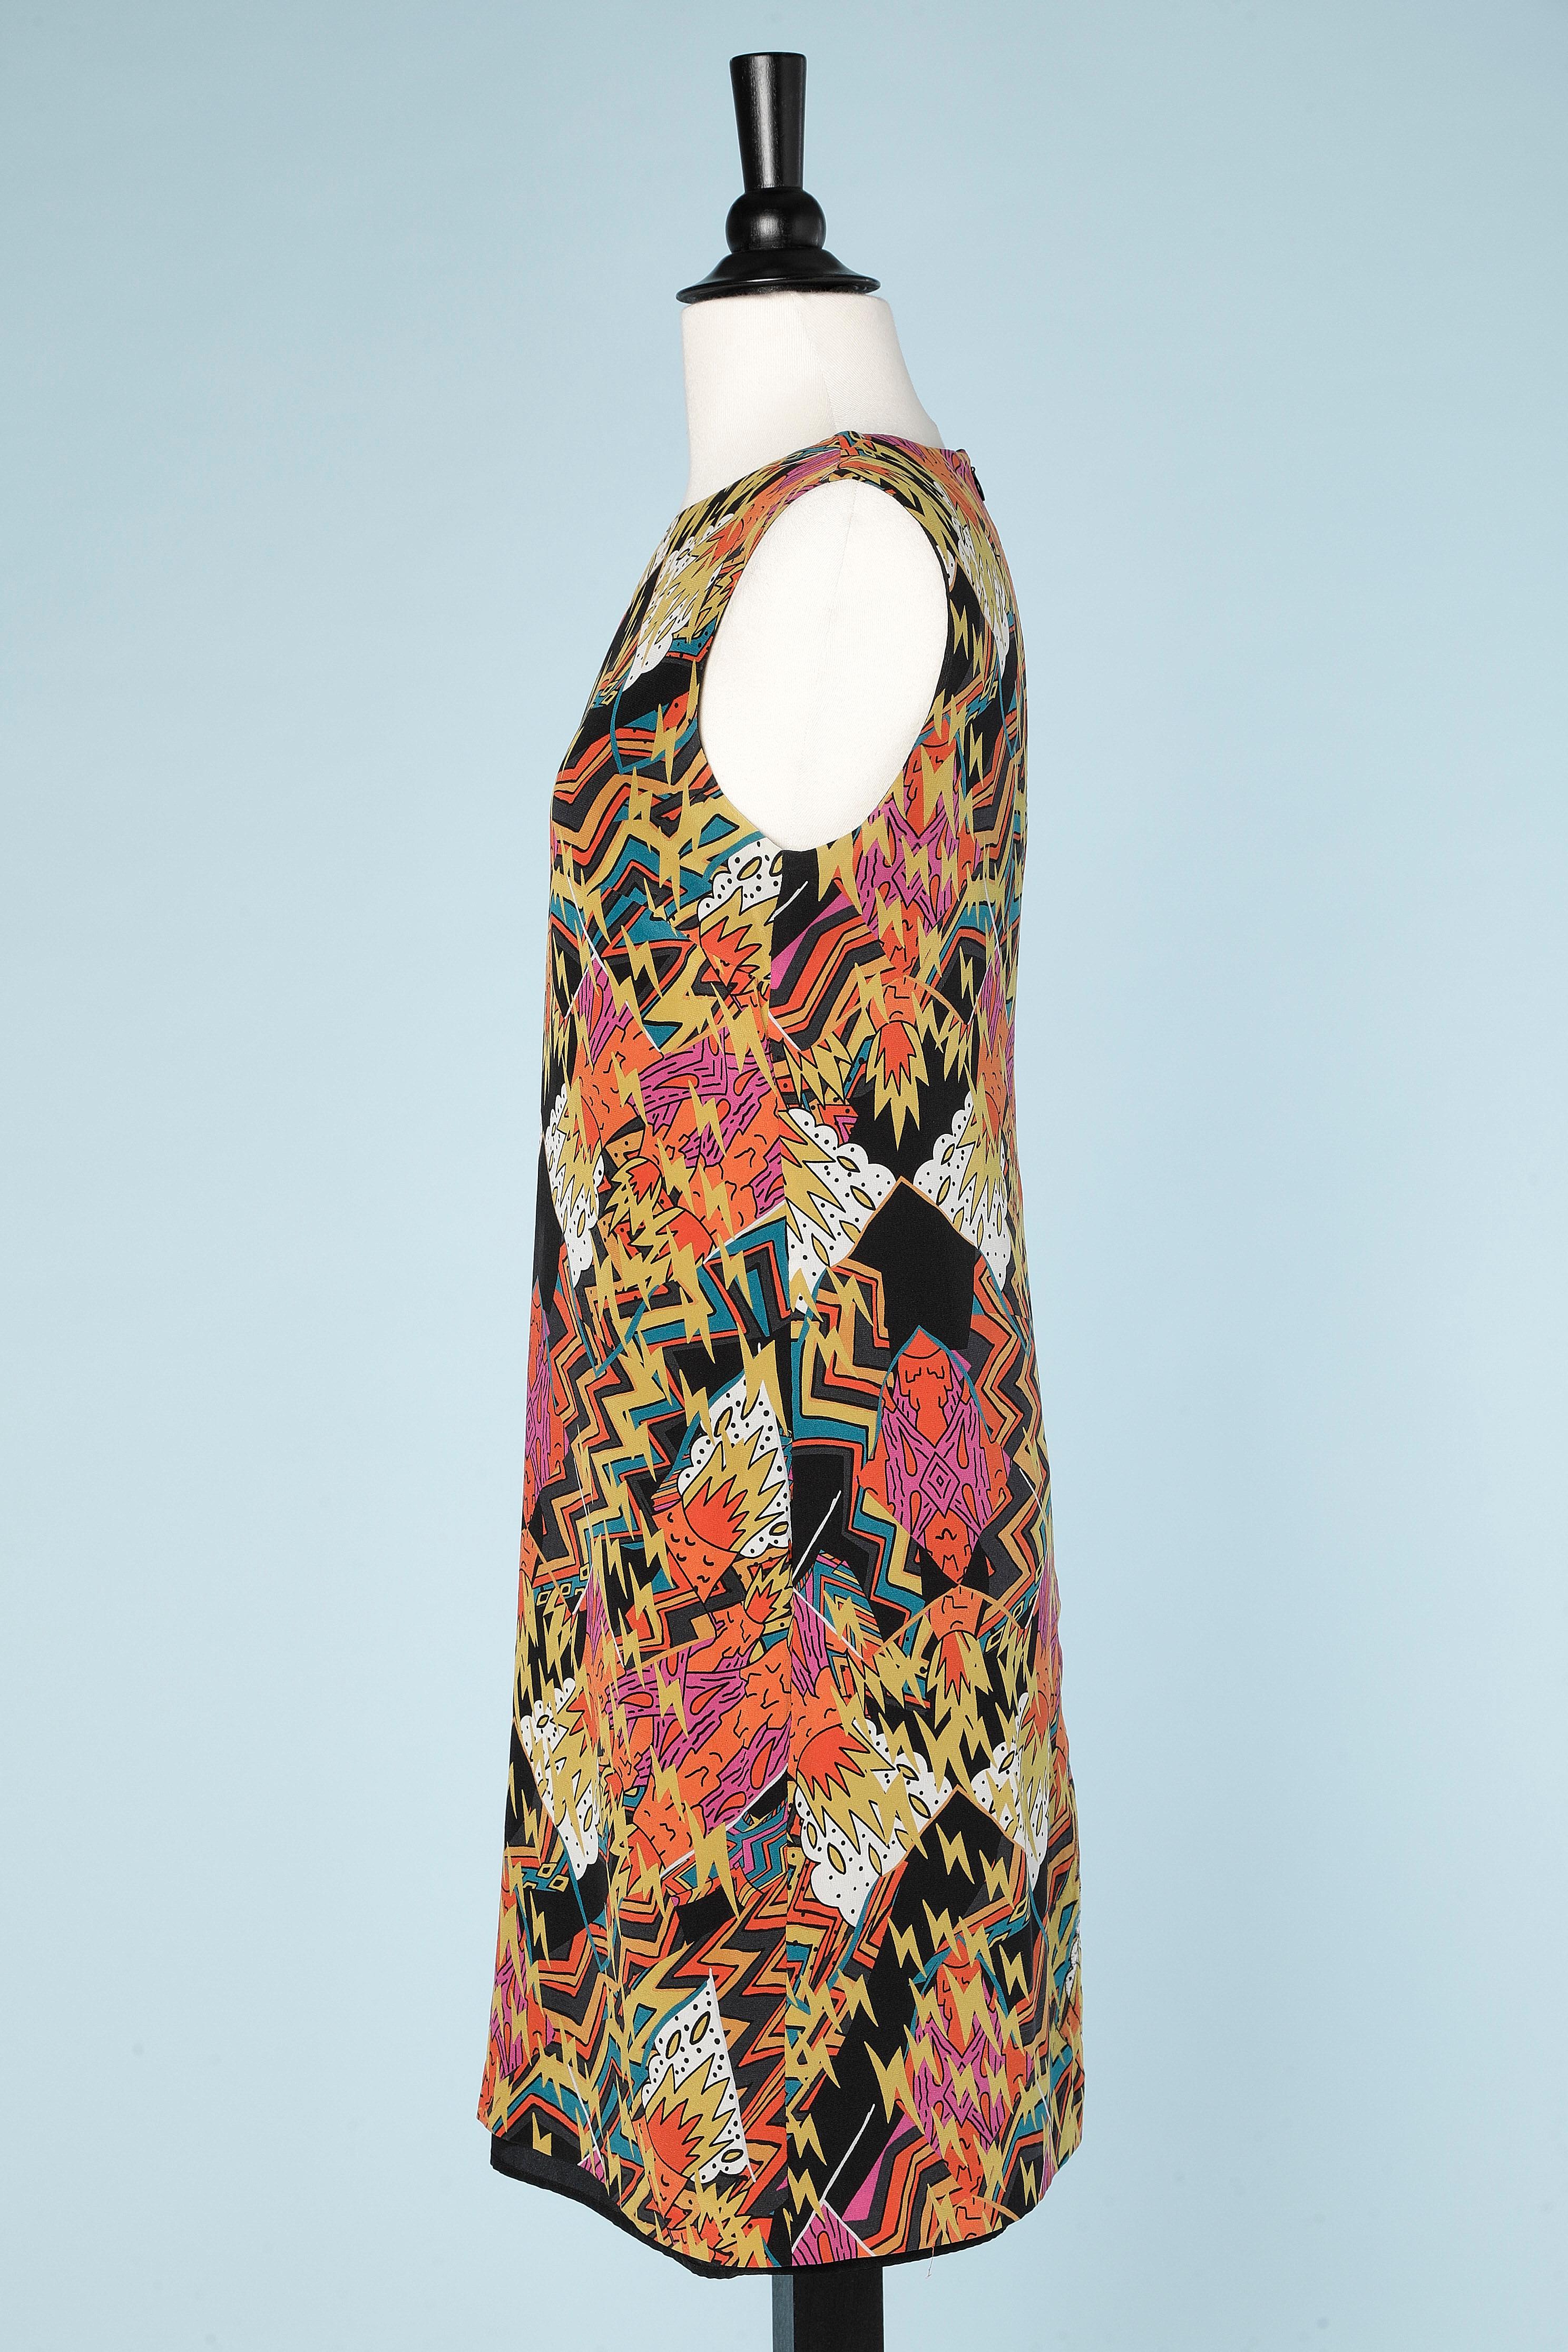 Abstrakt  ärmelloses bedrucktes Kleid aus Seide.
GRÖSSE 40 (M) 